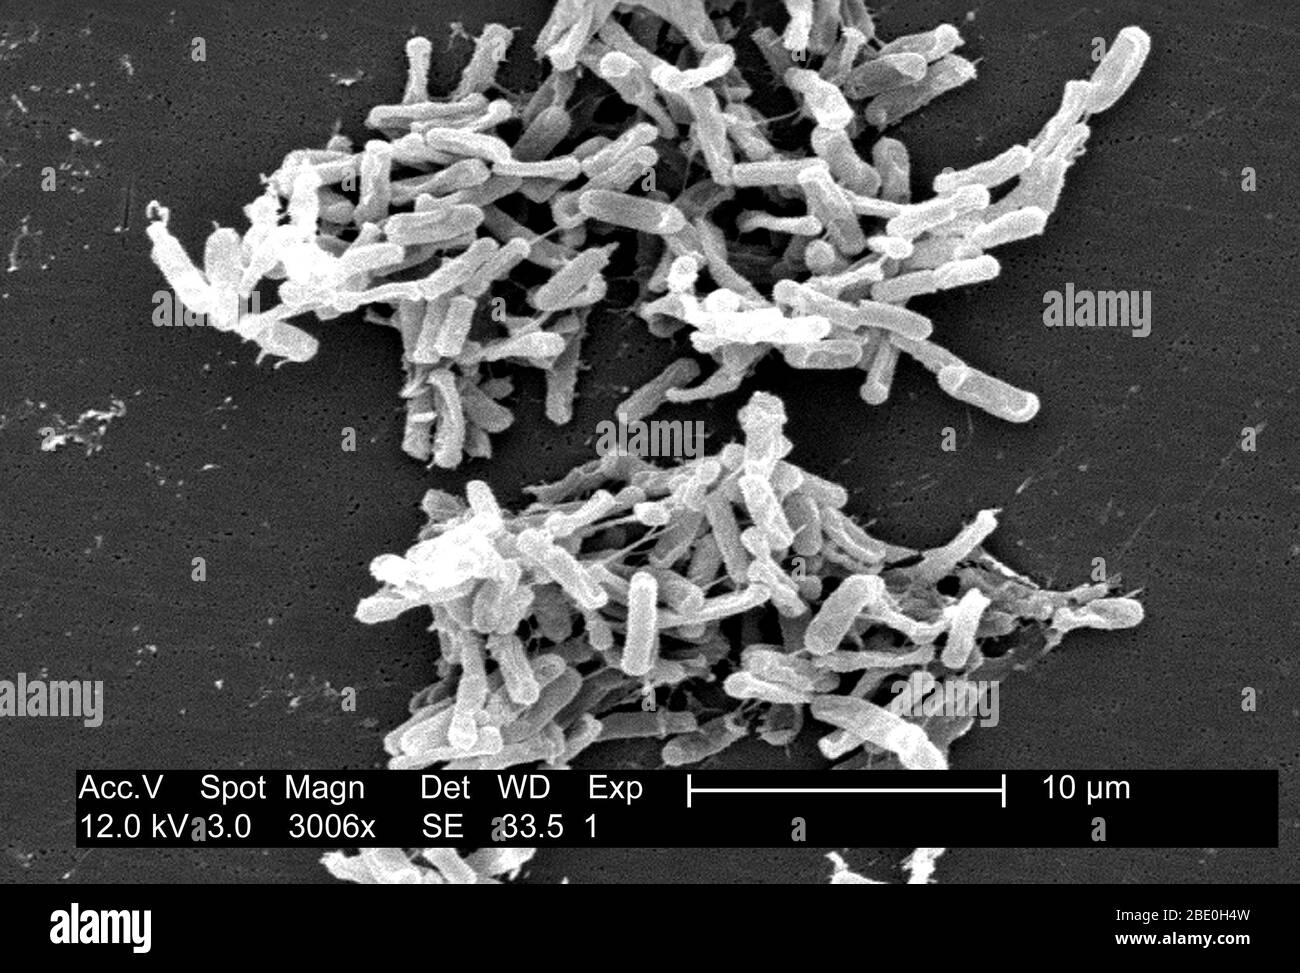 Scanning Electron Micrograph (SEM) zeigt Gram-positive Clostridium difficile Bakterien. Diese C. difficile-Organismen wurden aus einer Stuhlprobe kultiviert, die bei einem Ausbruch einer Magen-Darm-Erkrankung gewonnen wurde, und mit einem .1µm-Filter extrahiert. C. difficile verursacht Durchfall und ernstere Darmerkrankungen wie Kolitis. Stockfoto